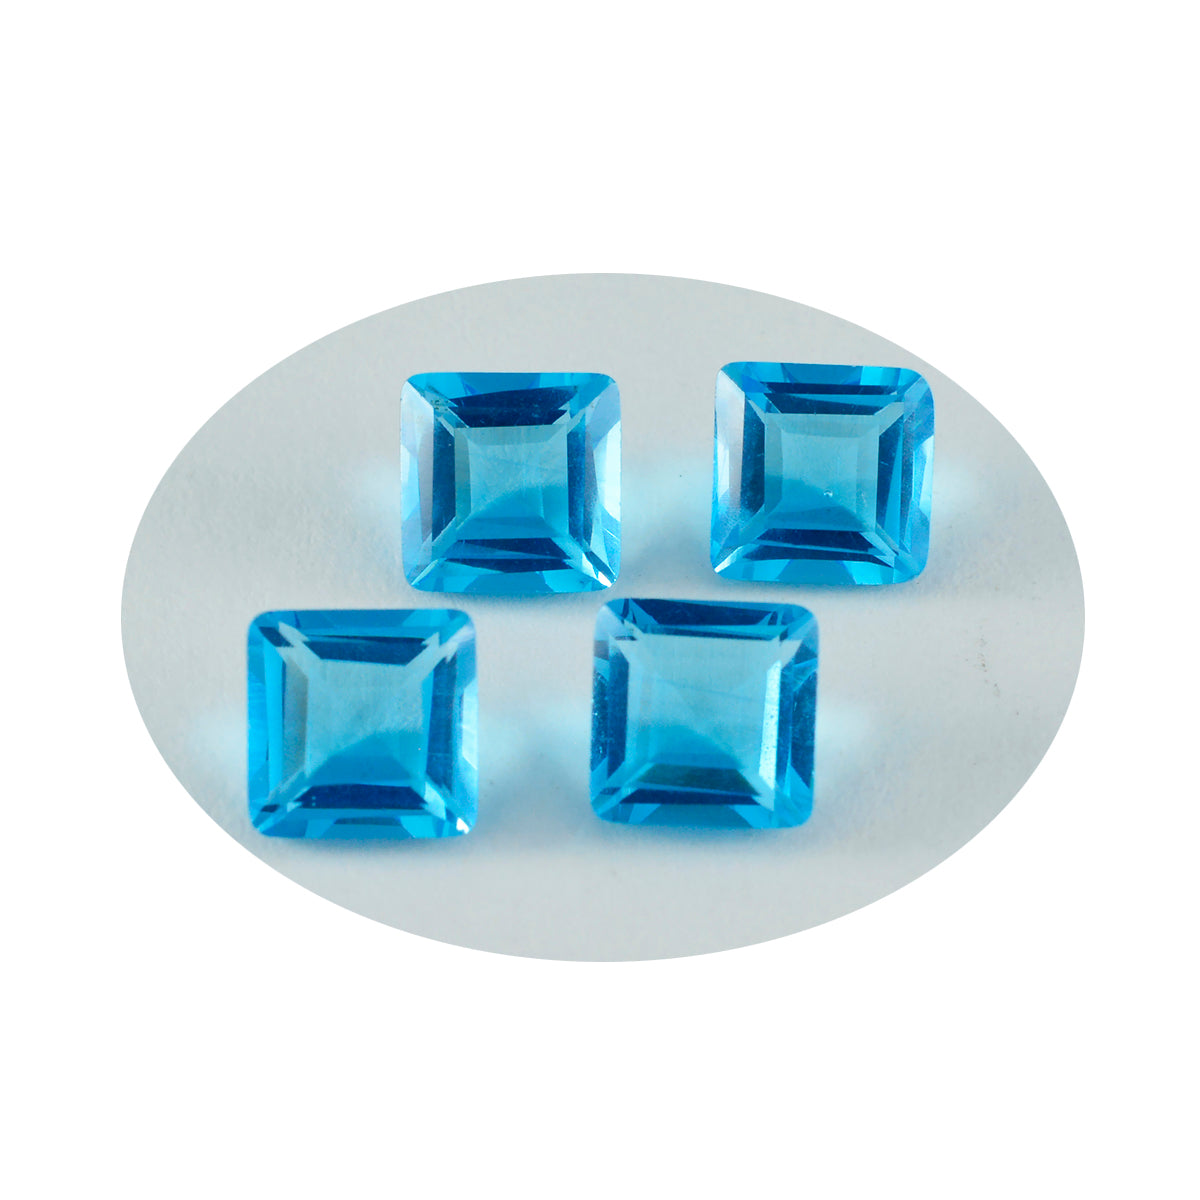 Riyogems 1PC Blue Topaz CZ gefacetteerd 10x10 mm vierkante vorm mooie kwaliteit losse edelstenen